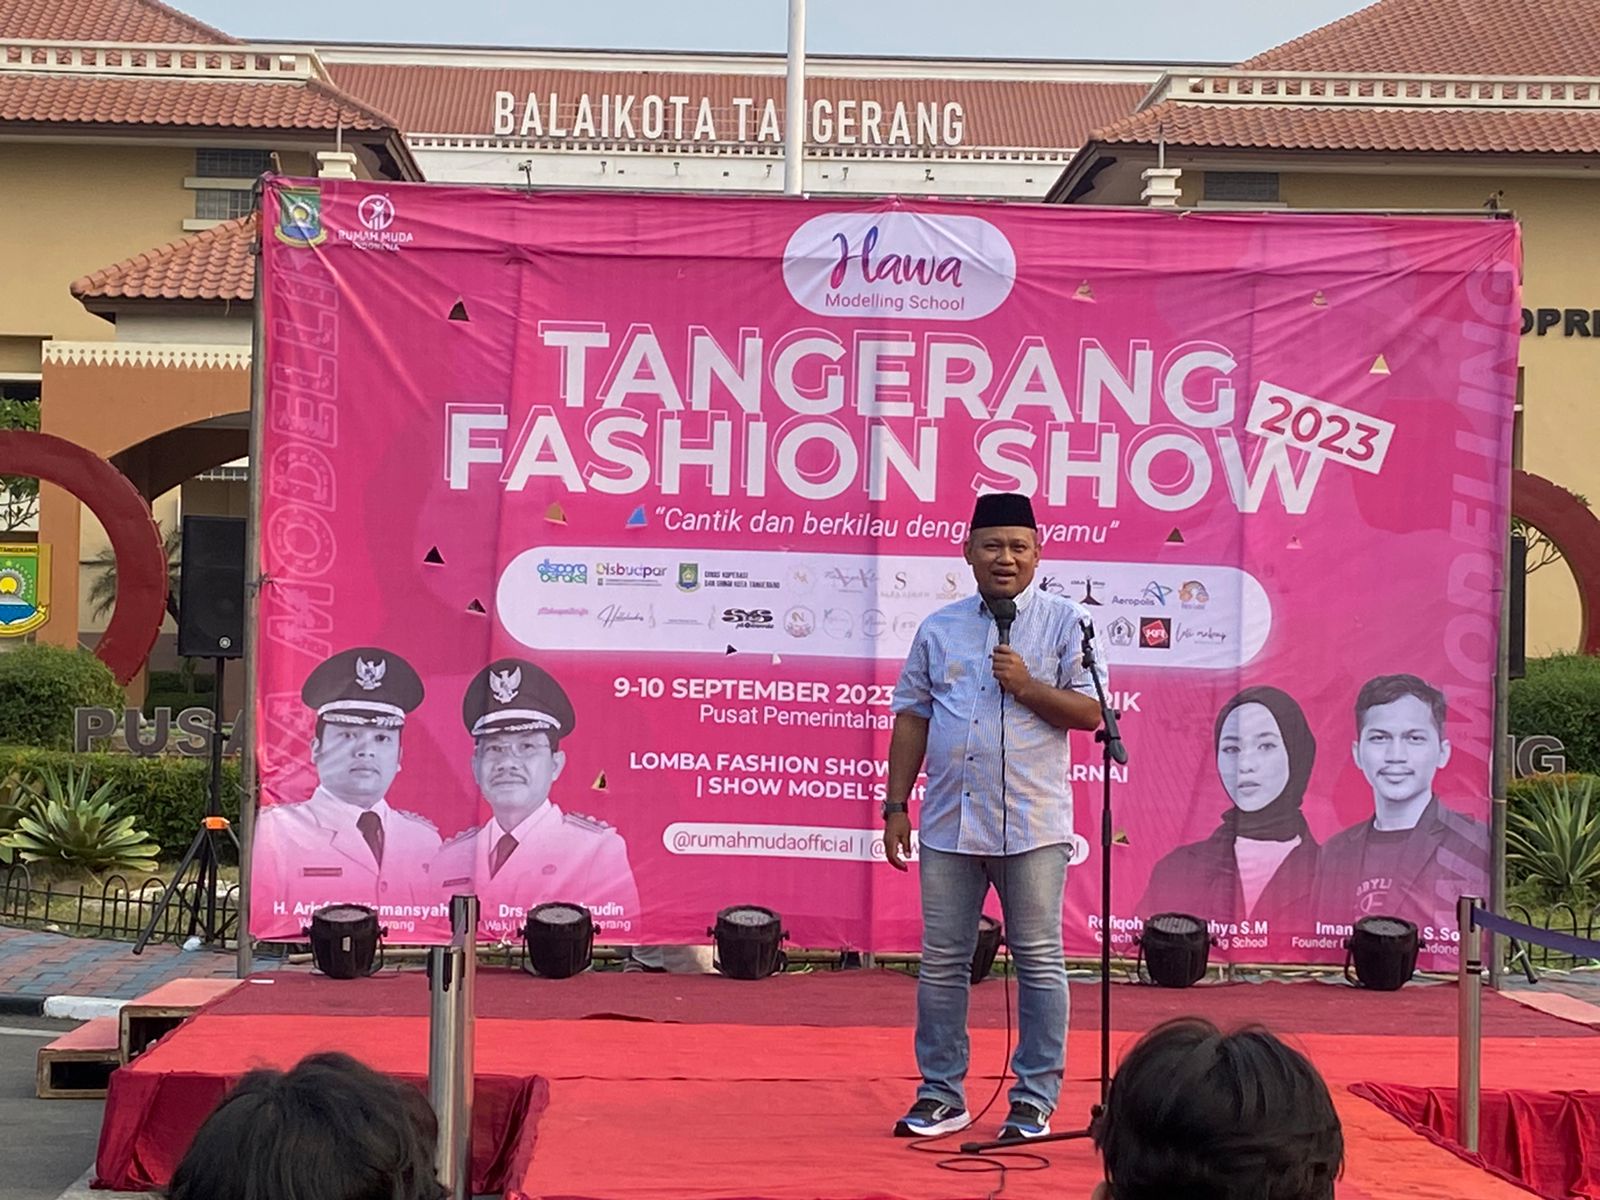 Membuka Kegiatan Tangerang Fashion Show di Taman Elektrik Puspem Kota Tangerang